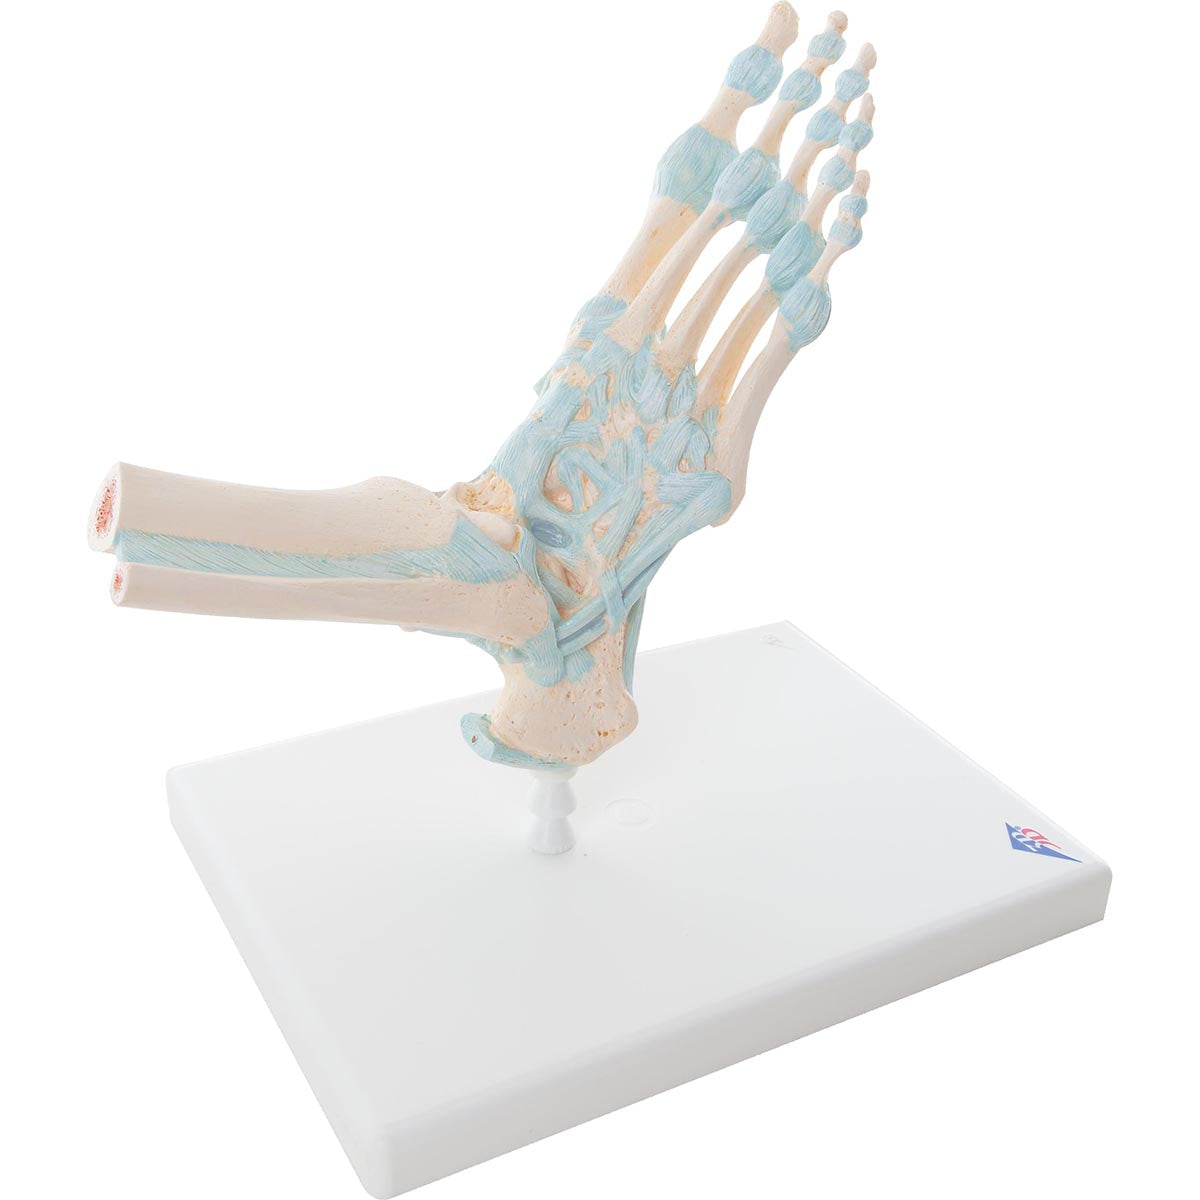 Modell av fotens skelett med ligament och hälsenan samt lite av smalbenet och vaden